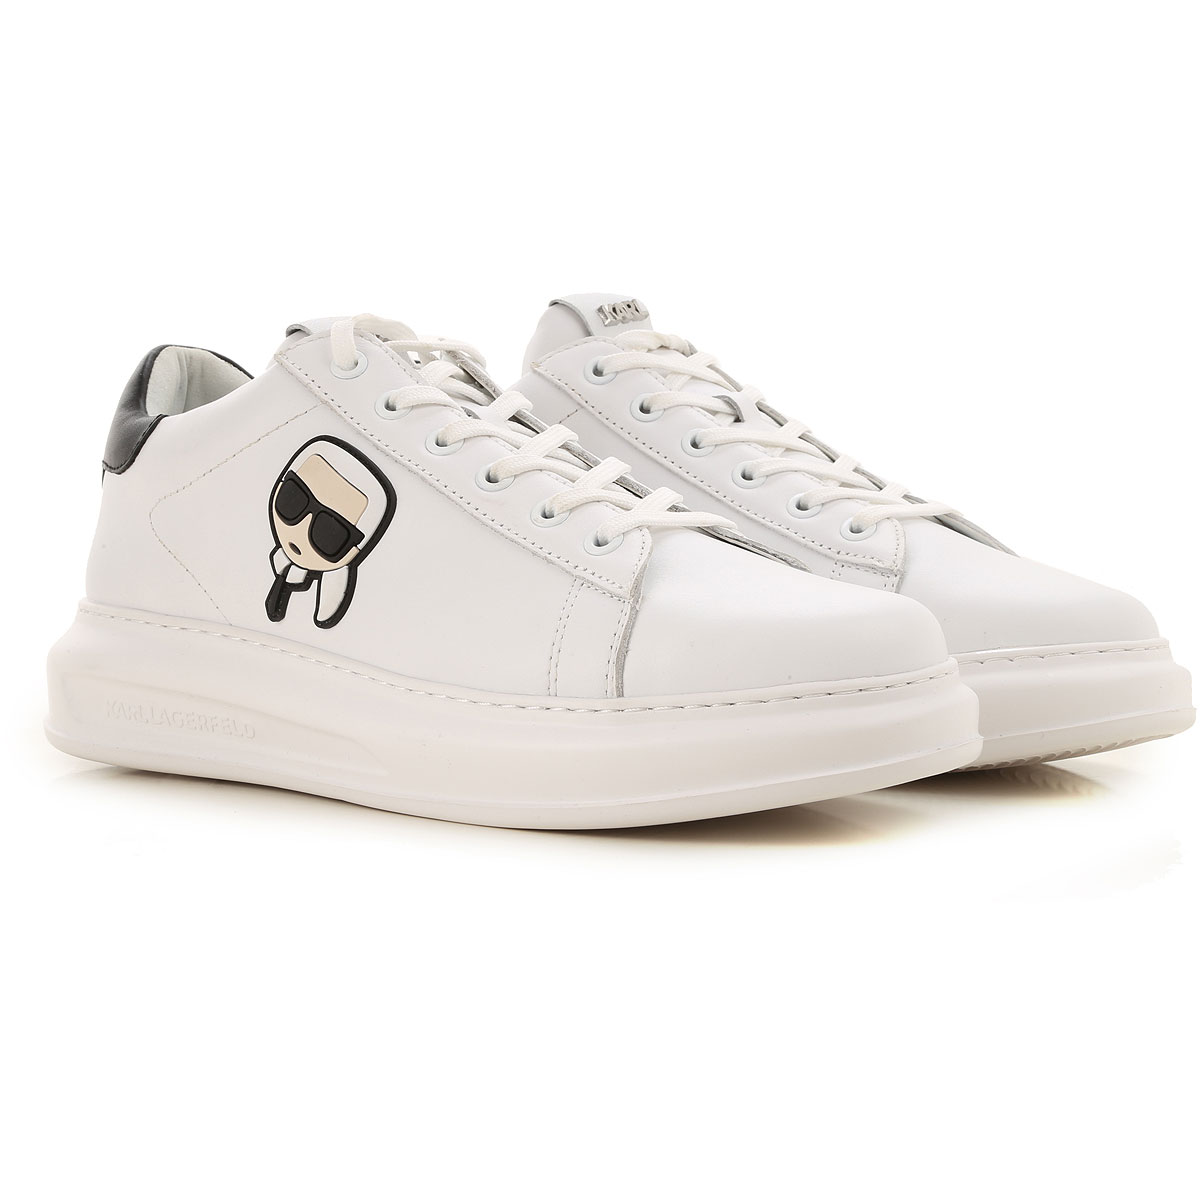 Mens Shoes Karl Lagerfeld, Style code: kl52530-011-kaprimens